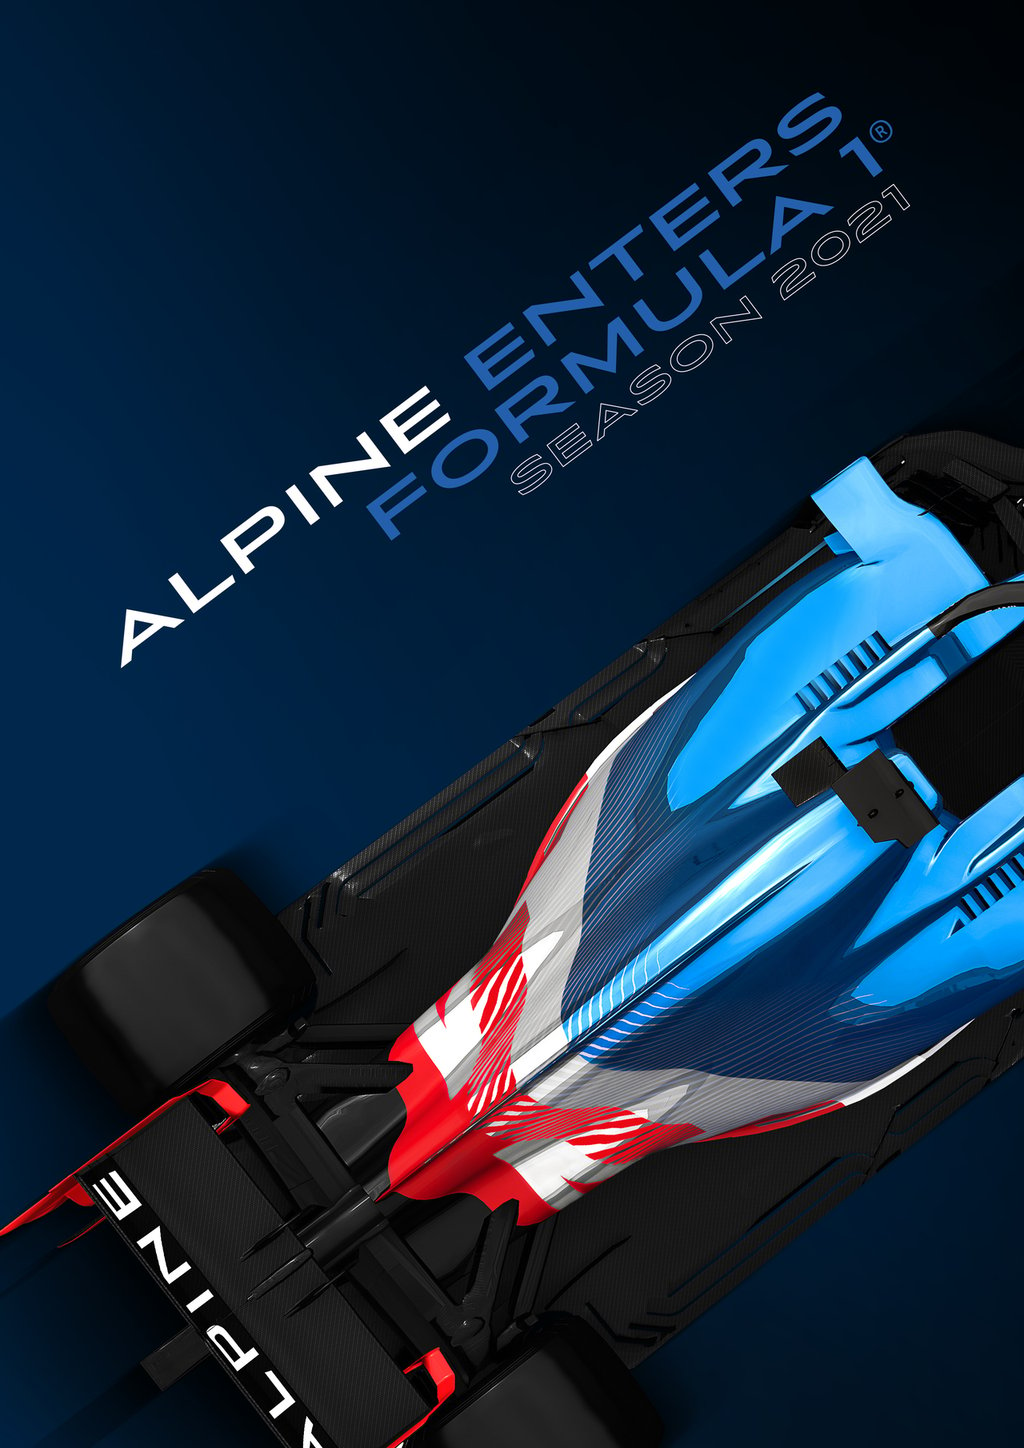 Alpine ya está listo para el 2021